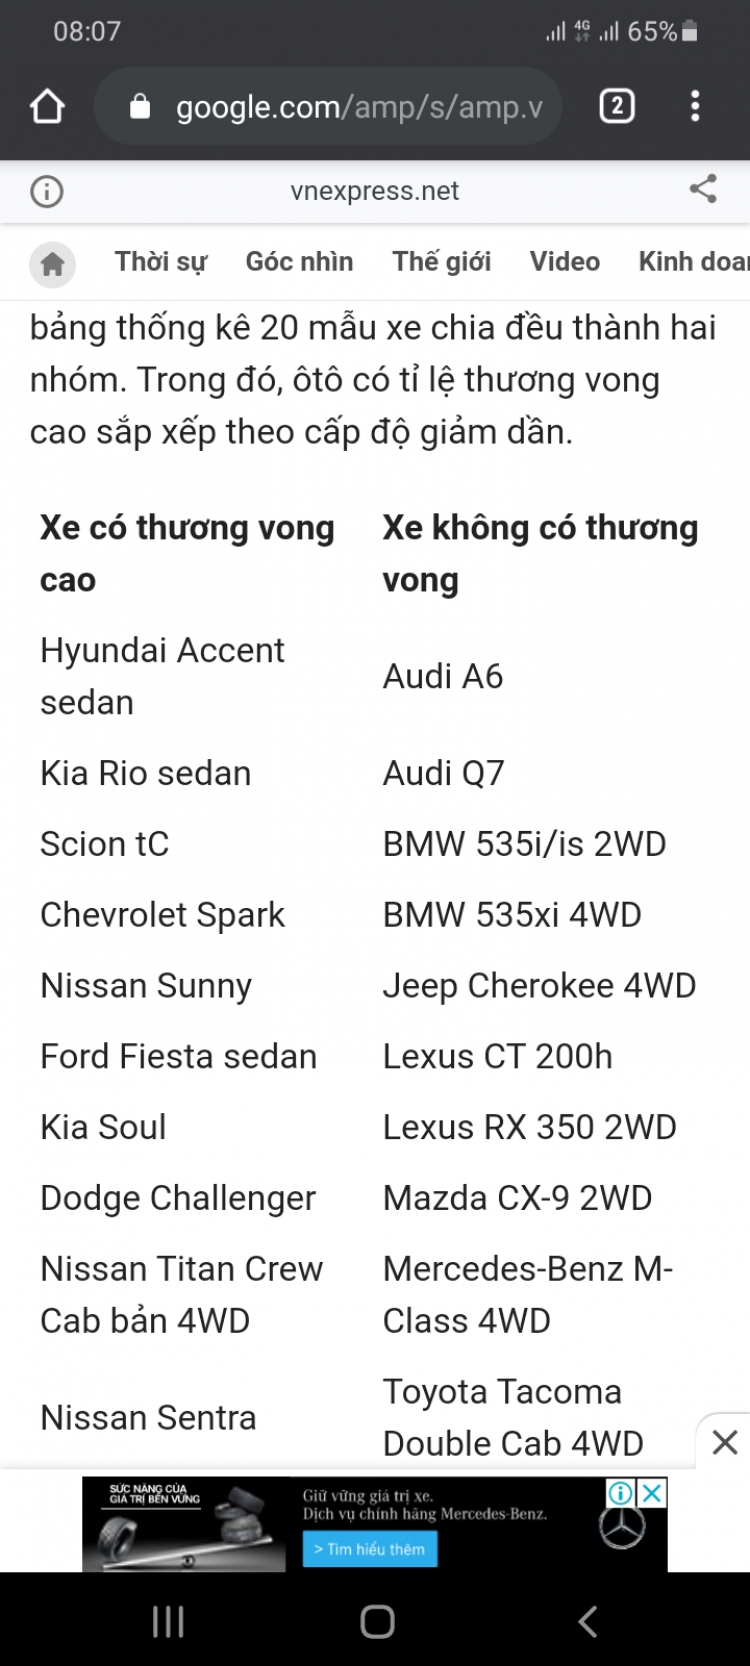 Mới ra mắt, đã có Hyundai Accent 2021 bản full đăng ký biển vàng chạy dịch vụ ở TP.HCM